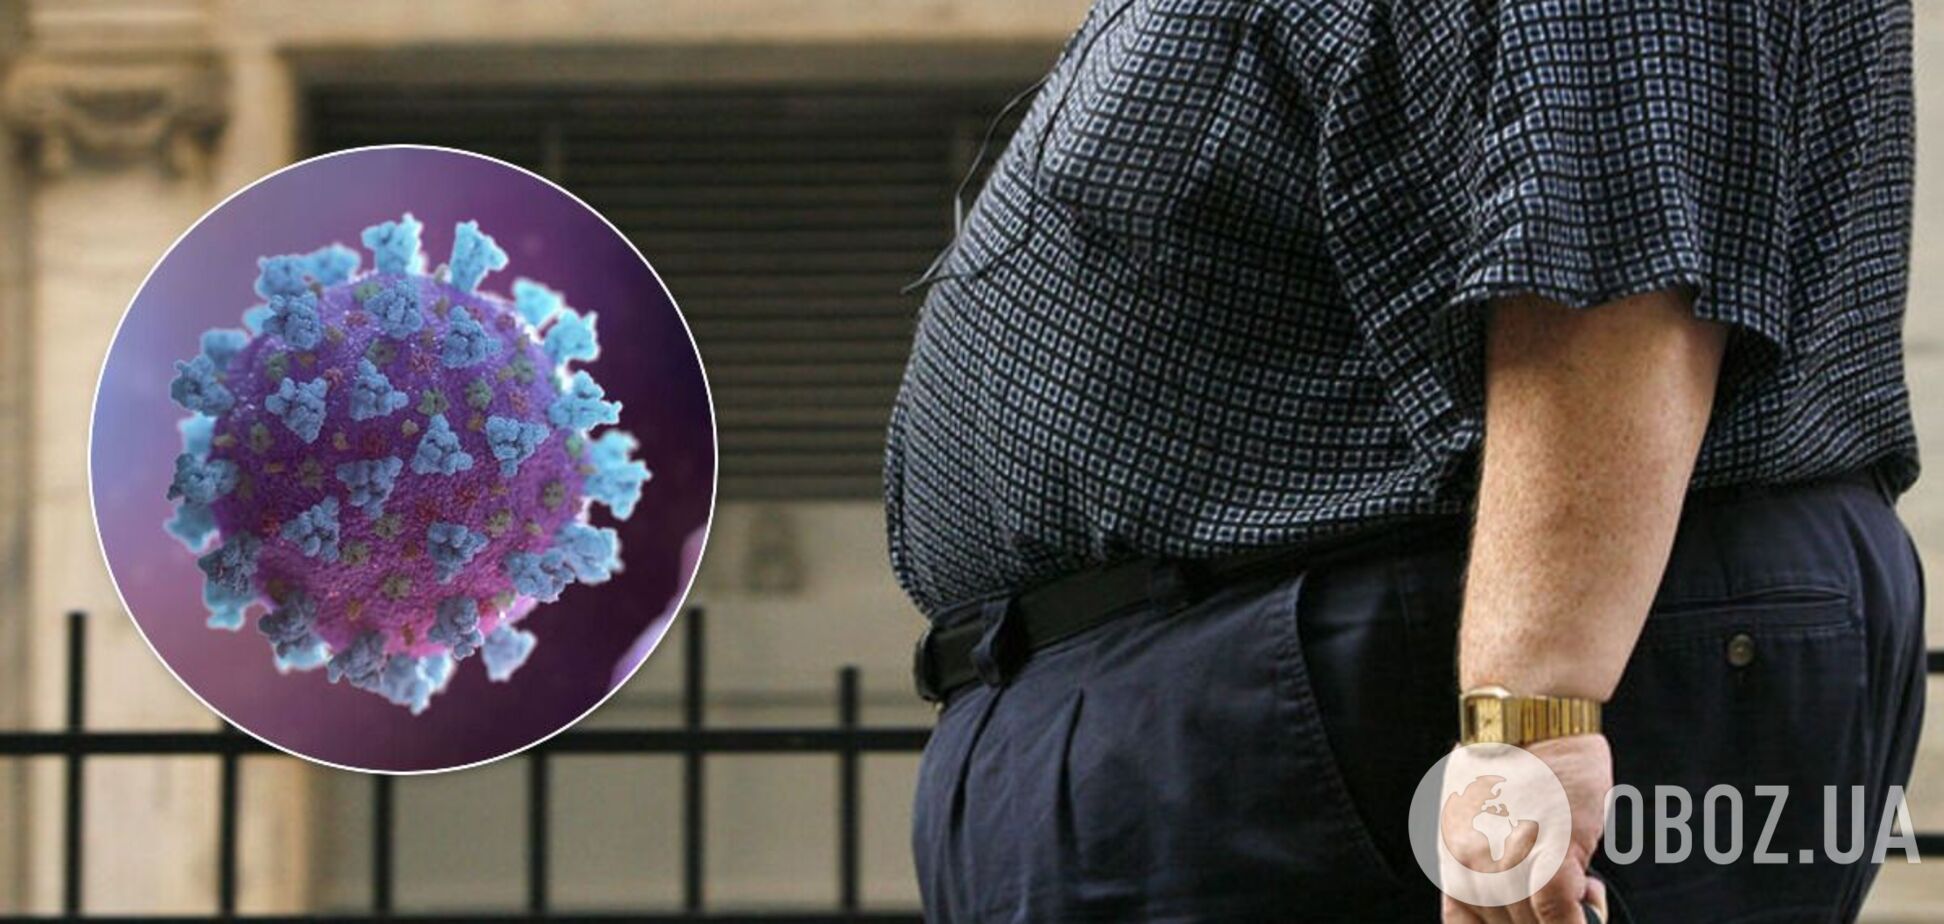 Люди с лишним весом сильнее распространяют коронавирус